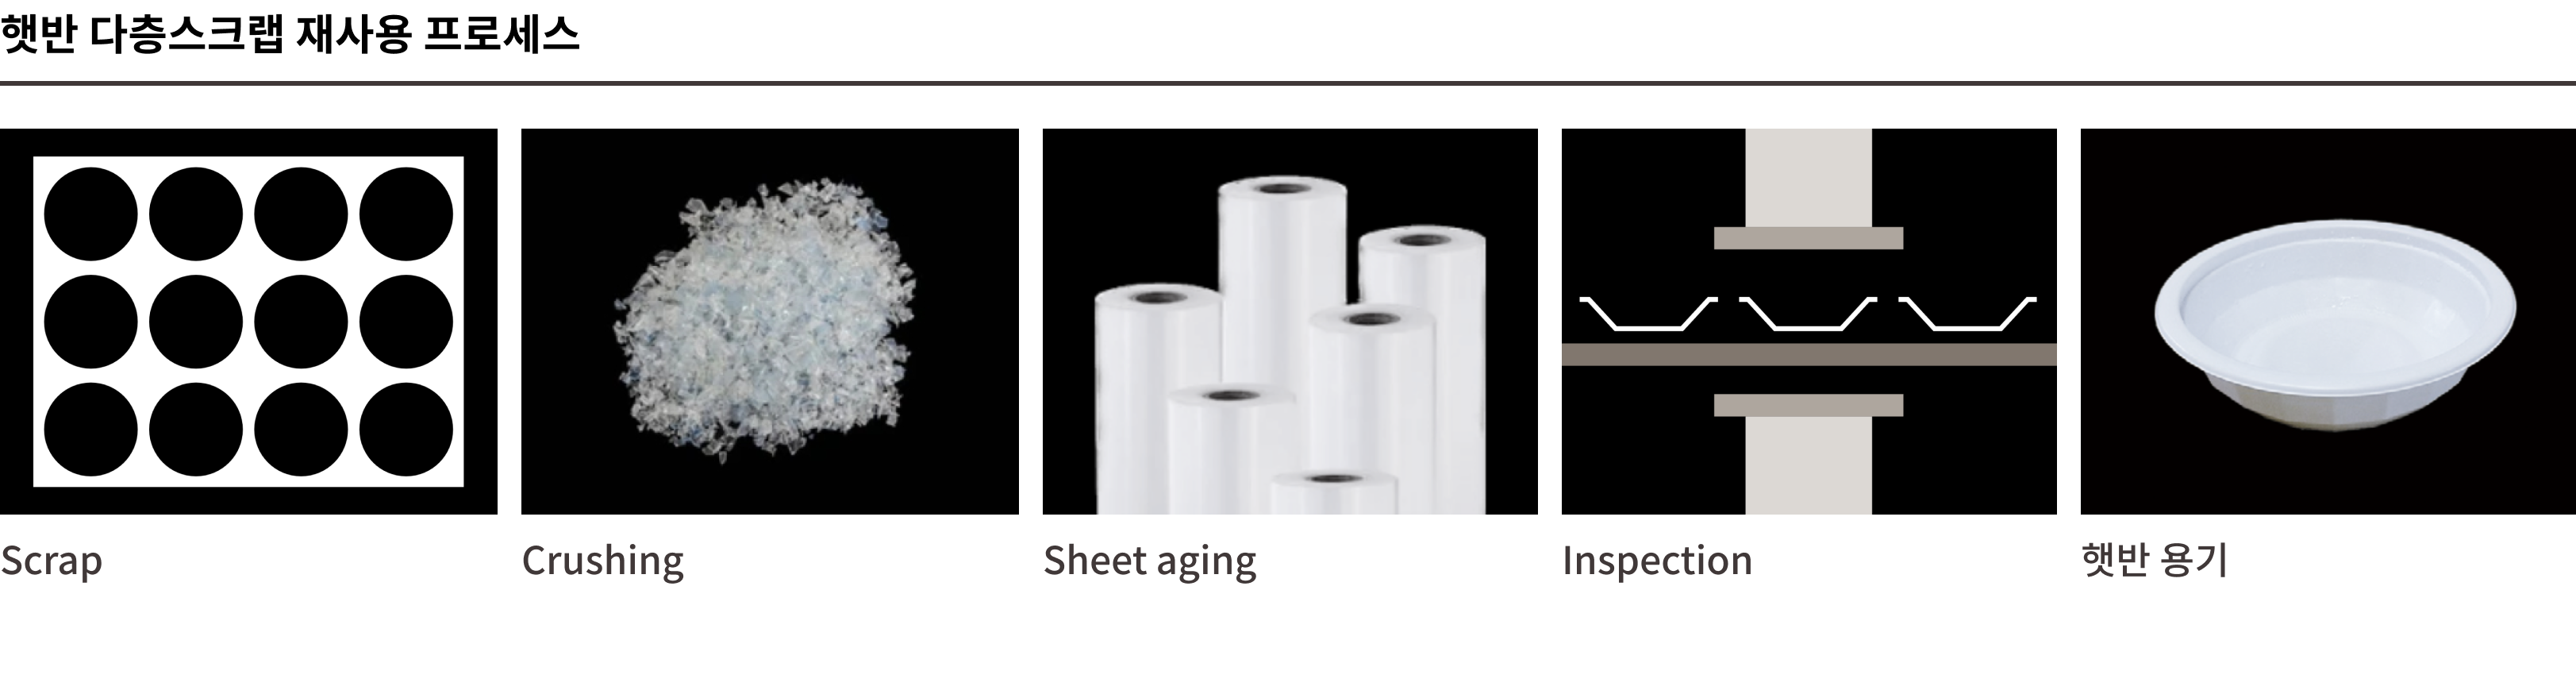 햇반 다층스크랩 재사용 프로세스 이미지. 1.Scrap(용기 사용부분 이외 자투리 부분 모음) > 2.Crushing(자투리를 잘게 쪼갠다) > 3.Sheet aging(시트로 다시 재가공) > 4.Inspection(생산 활용 검열) > 5.햇반용기로 탄생